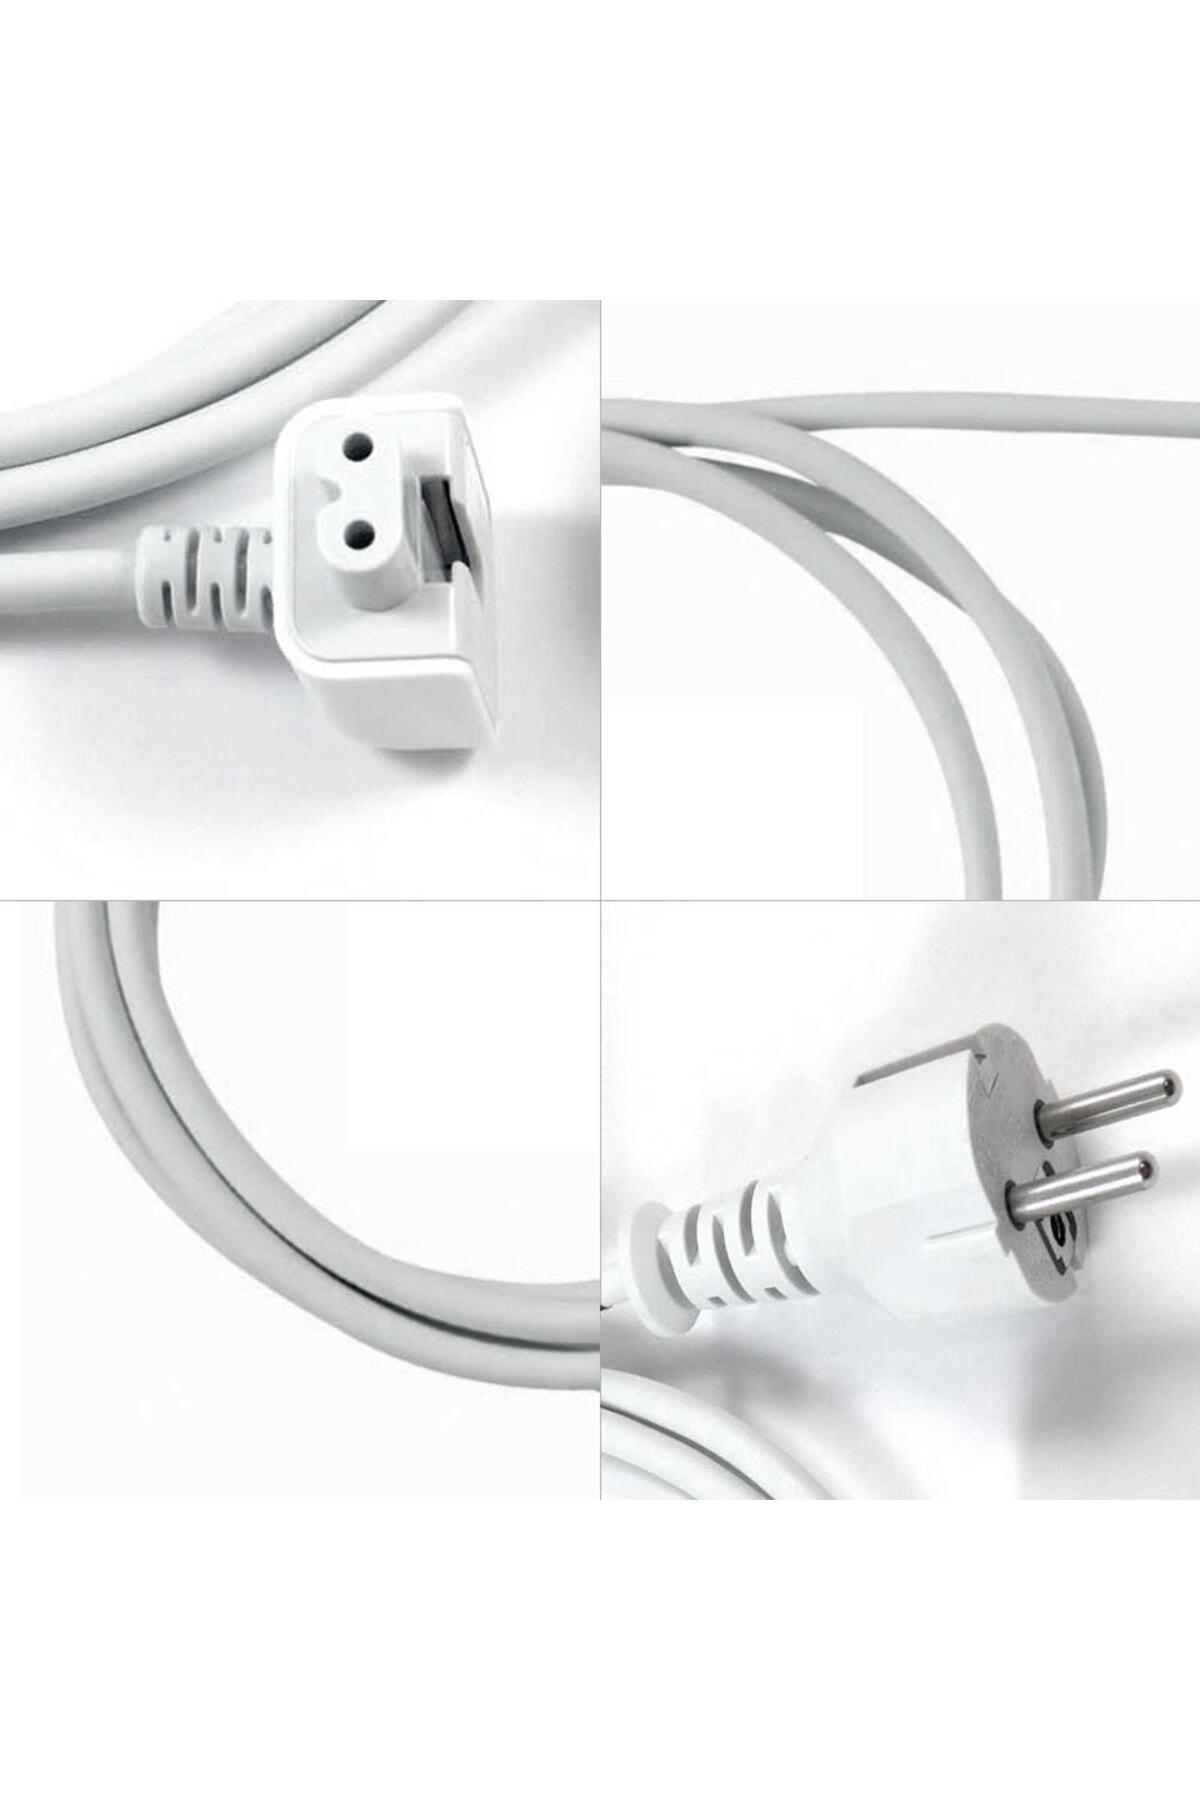 AQUA AKSESUAR Apple Macbook Şarj Adaptörü Uzatma Kablosu 1.8m Toprak Korumalı Yüksek Kalite